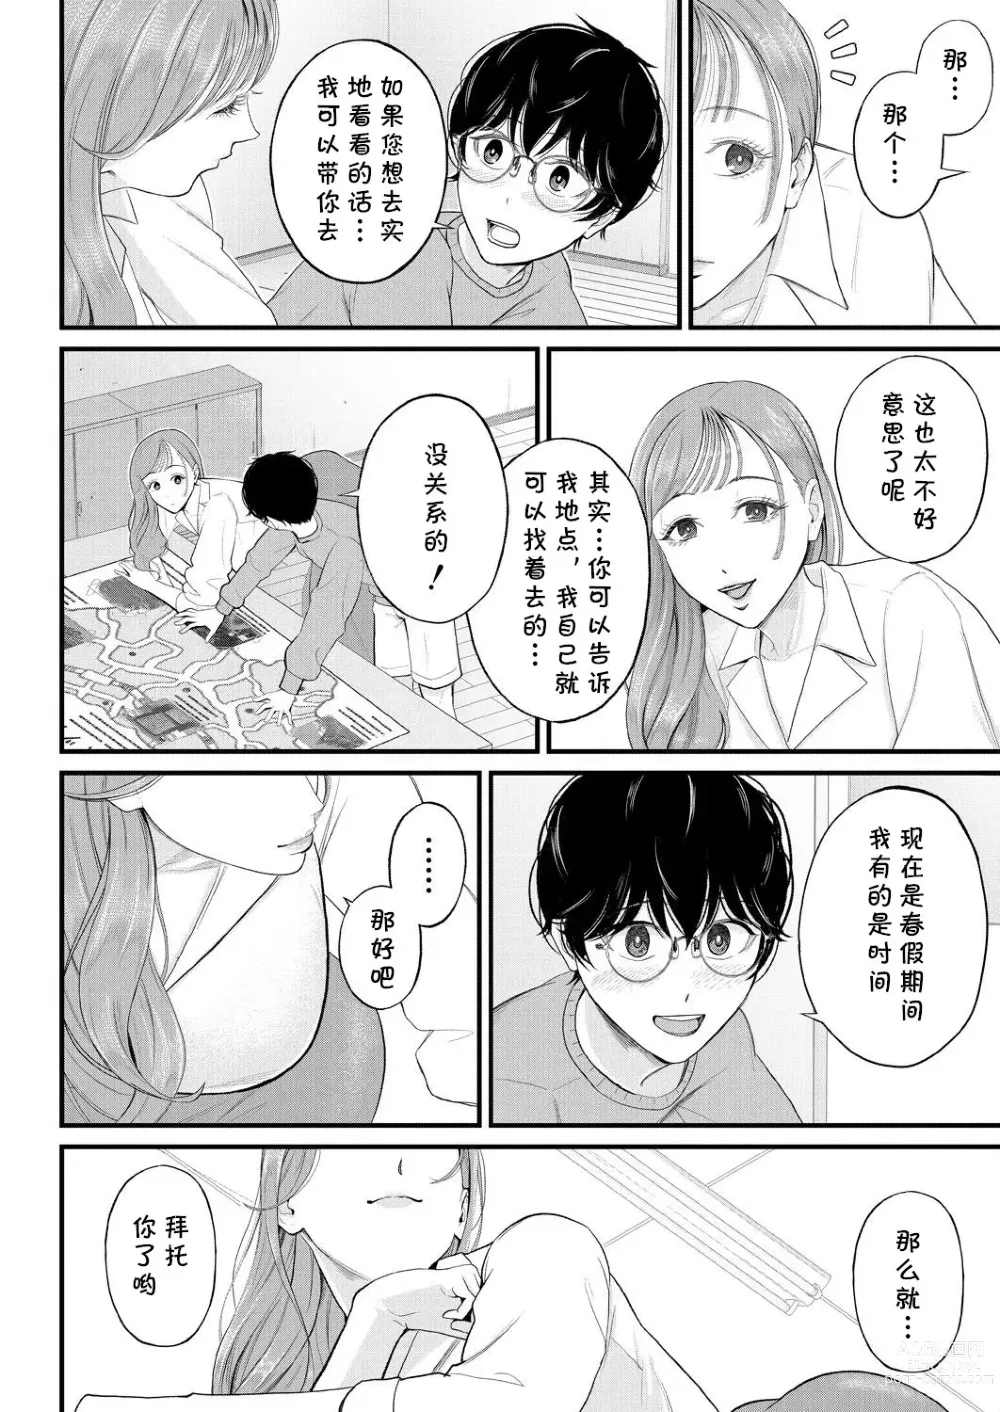 Page 6 of manga Kowaku no Field Work